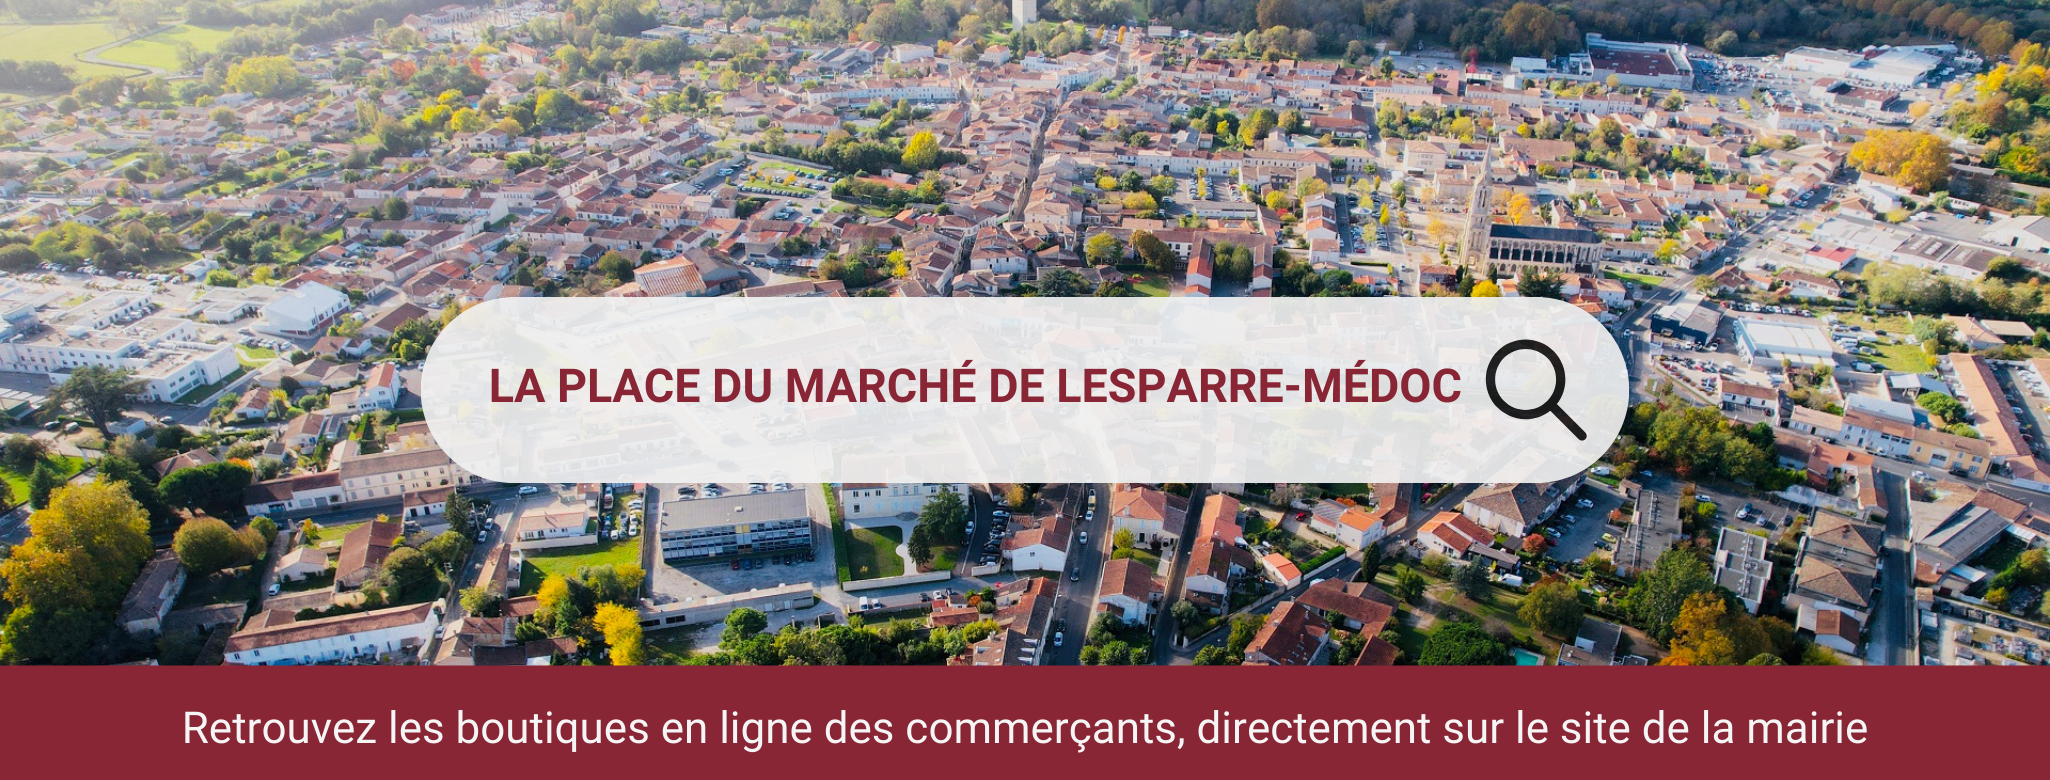 Bandeau Lesparre Médoc - Place du Marché Numérique